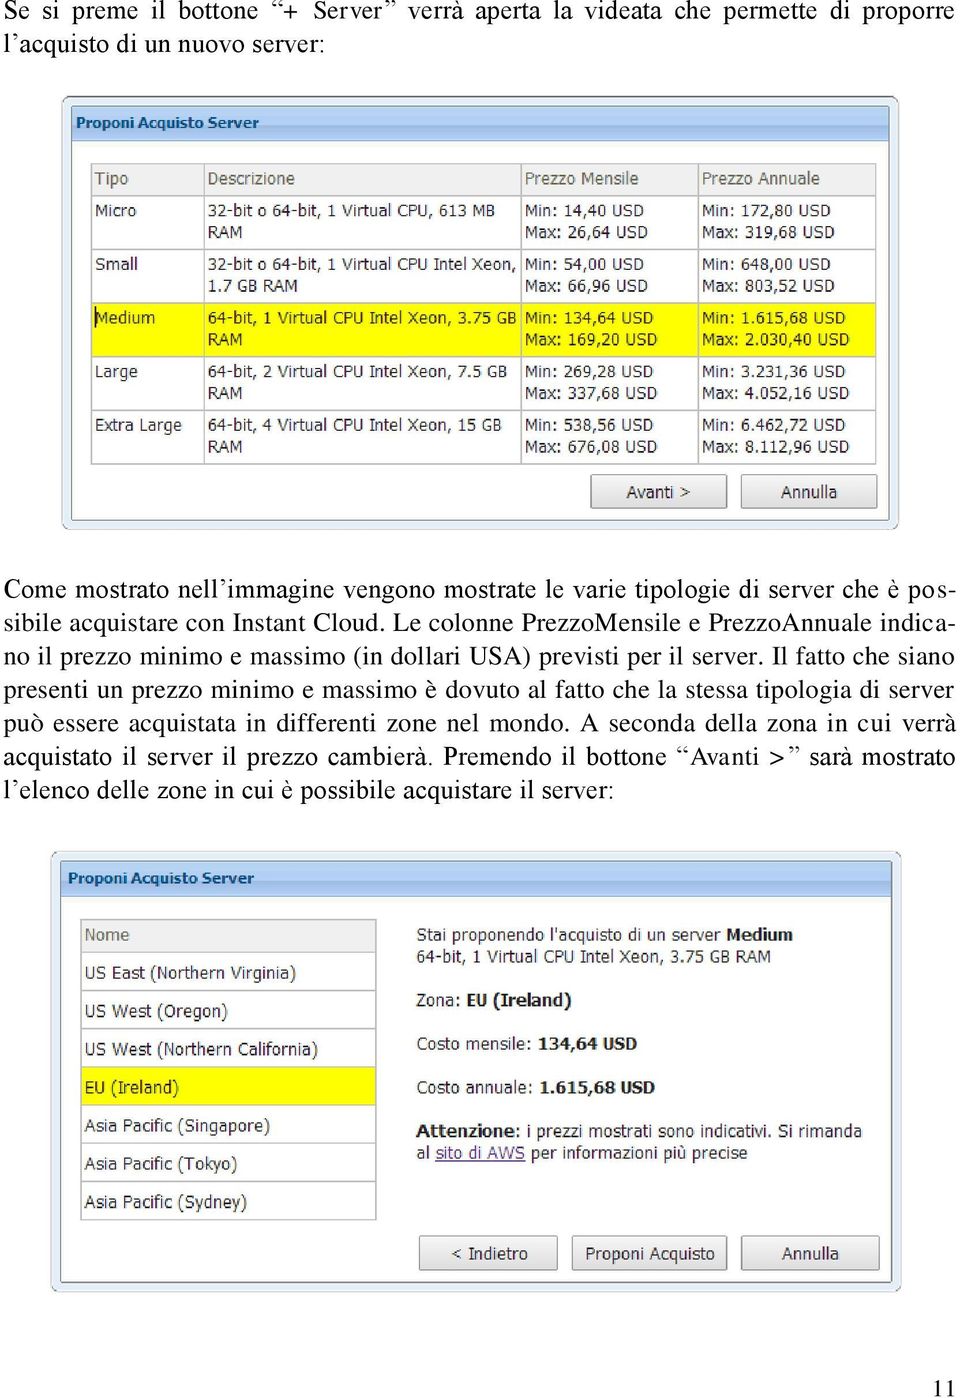 Le colonne PrezzoMensile e PrezzoAnnuale indicano il prezzo minimo e massimo (in dollari USA) previsti per il server.